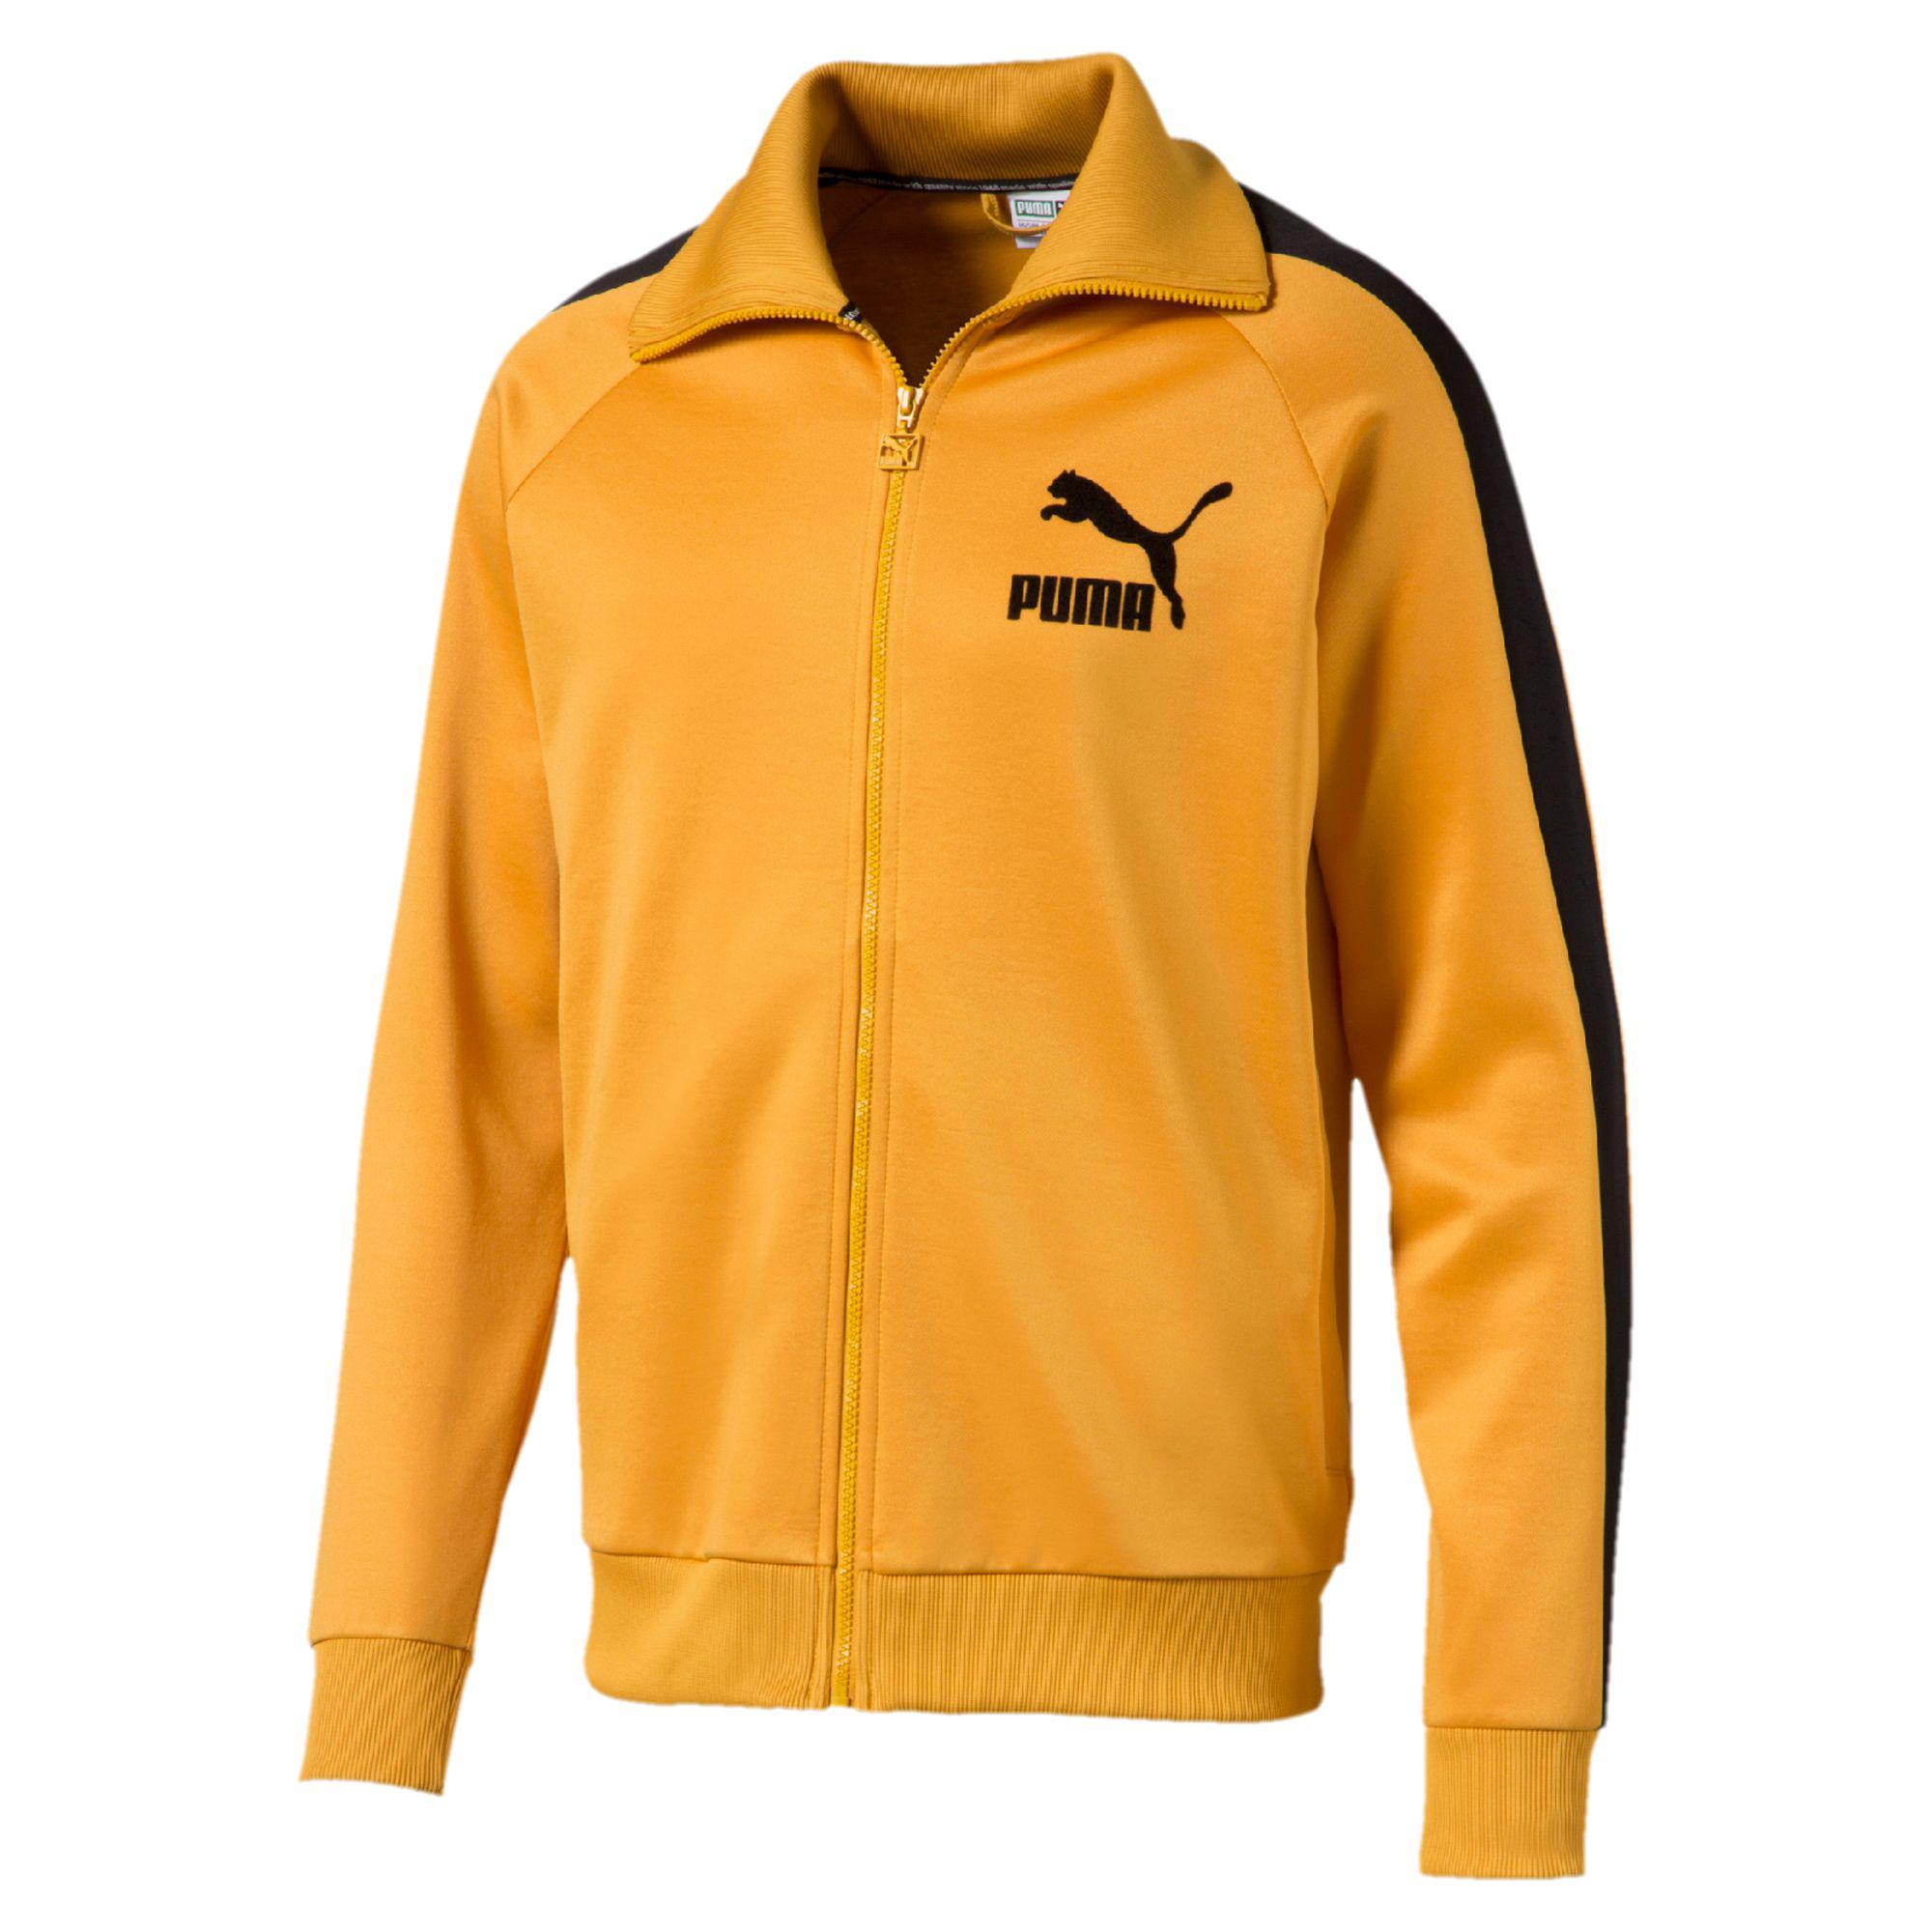 puma yellow jacket off 60% - www 